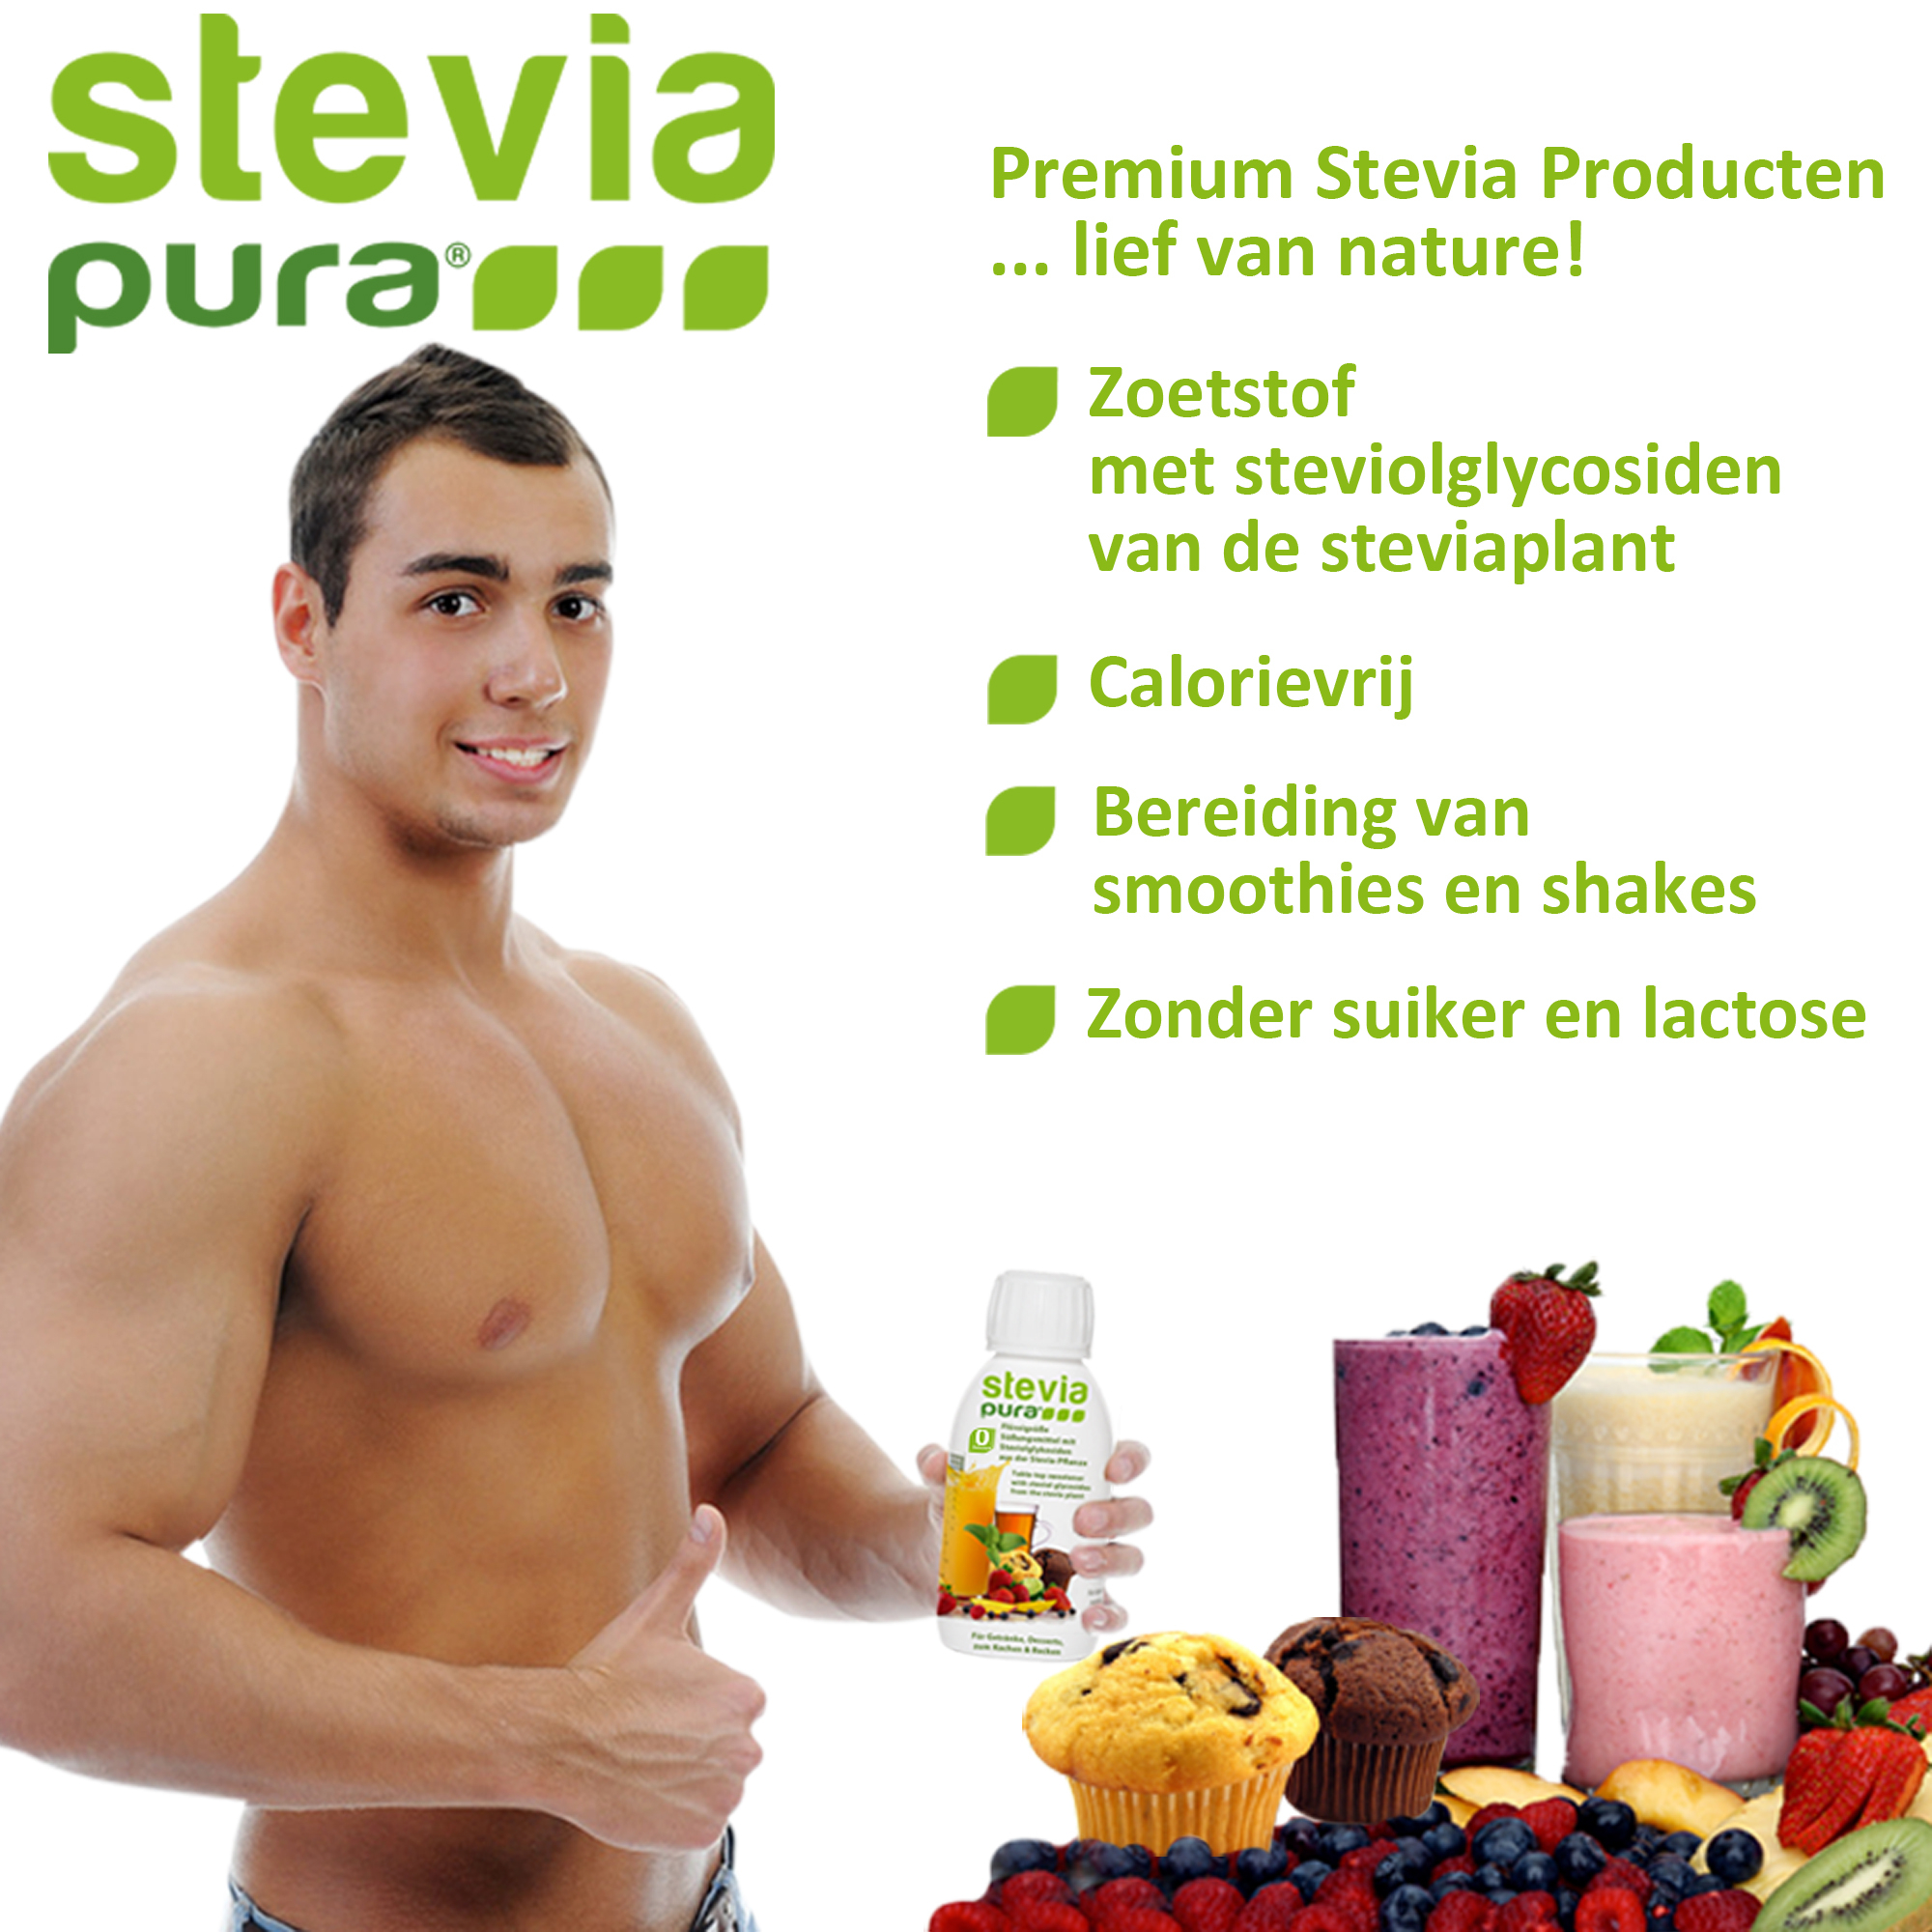 Het gebruik van Stevia vloeistof voor atleten om energiedrankjes en eiwitshakes te zoeten.